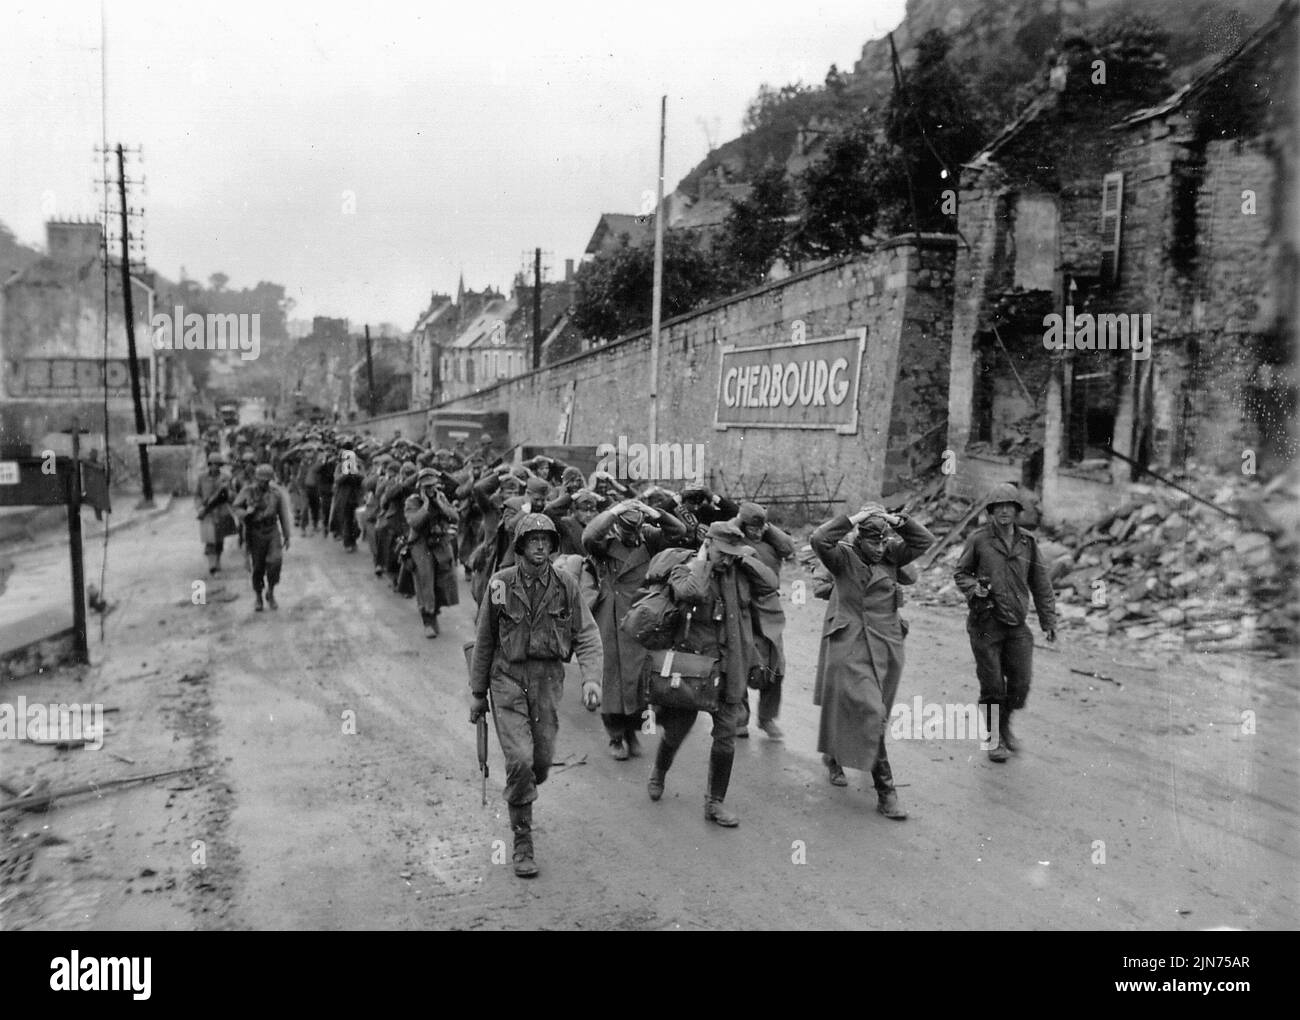 CHERBOURG, FRANCIA - 28 de junio de 1944 - Soldados del Ejército de los EE.UU. marchan a los prisioneros de guerra del ejército alemán fuera de Cherburgo Francia poco después de tomar la ciudad durante la I Normandía Foto de stock